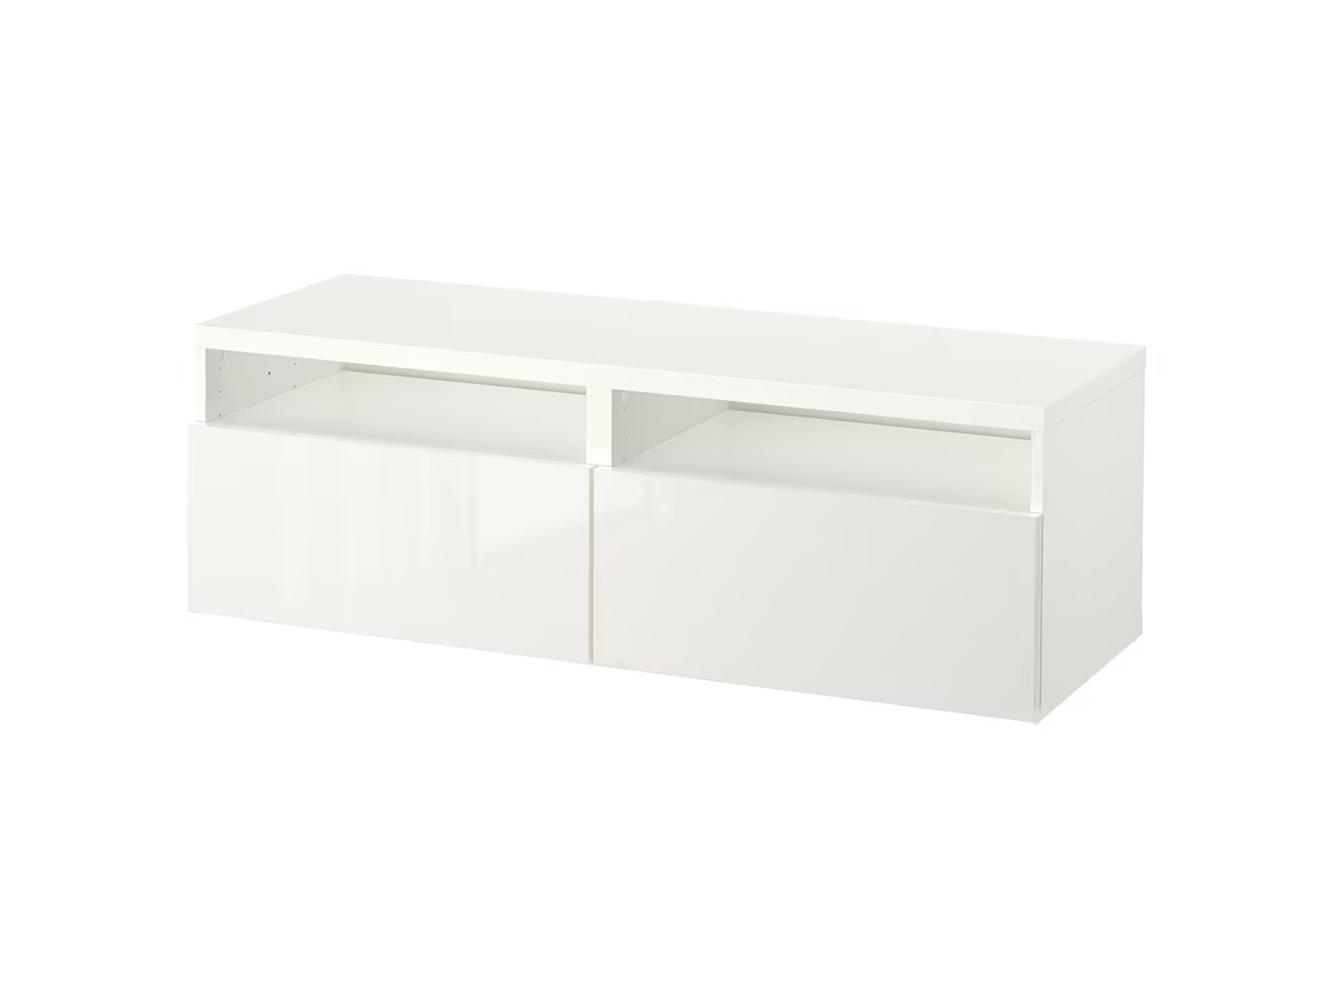 Комод Беста 120 white ИКЕА (IKEA)  изображение товара